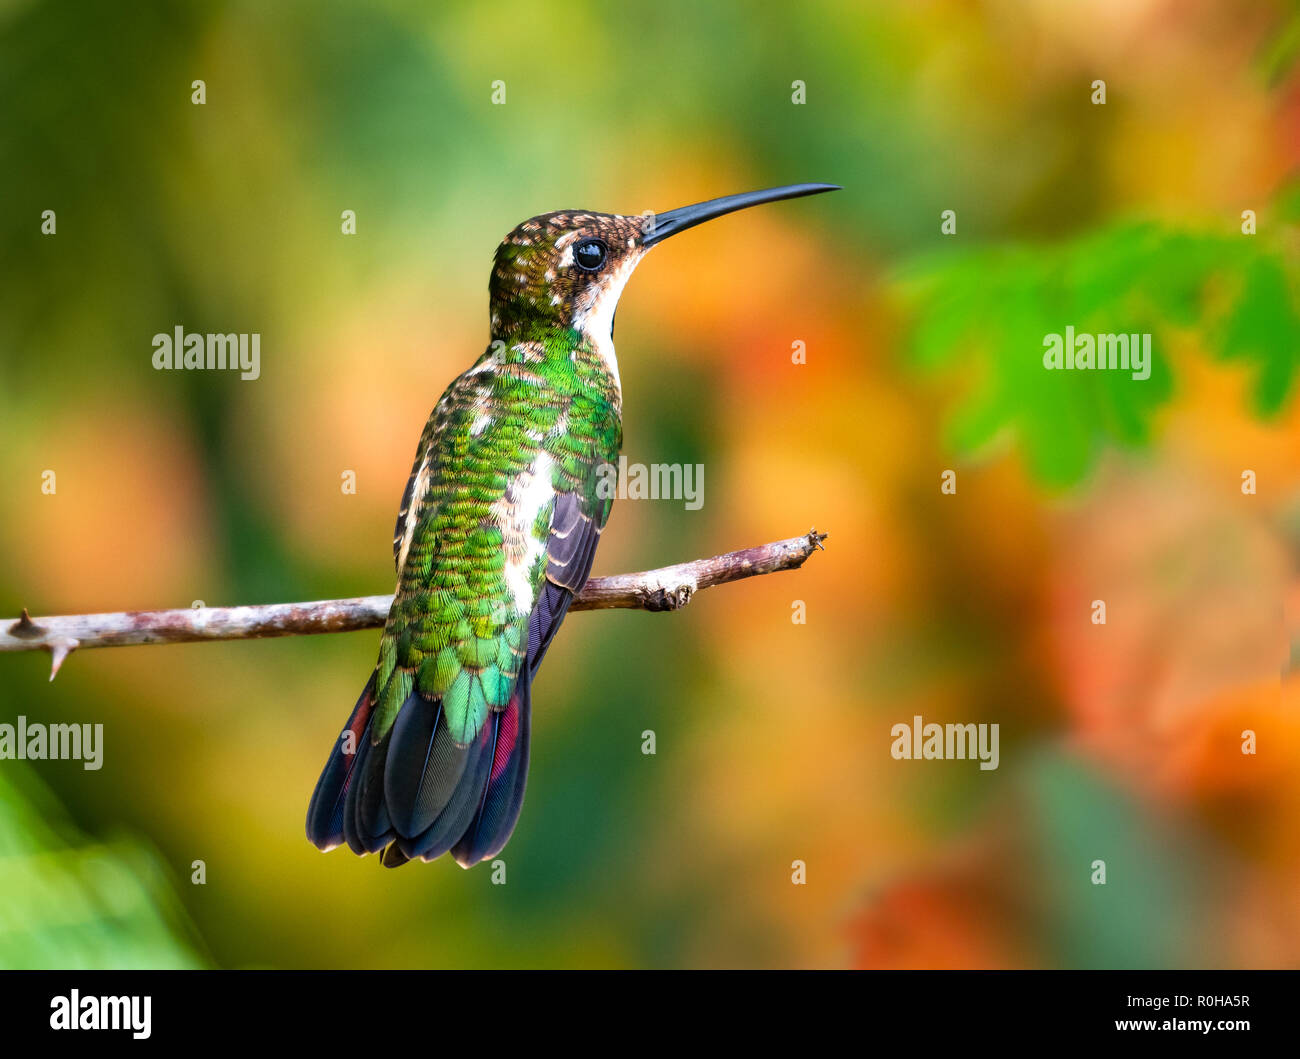 A juvenile Black-throated Mango hummingbird perches in a garden. Stock Photo